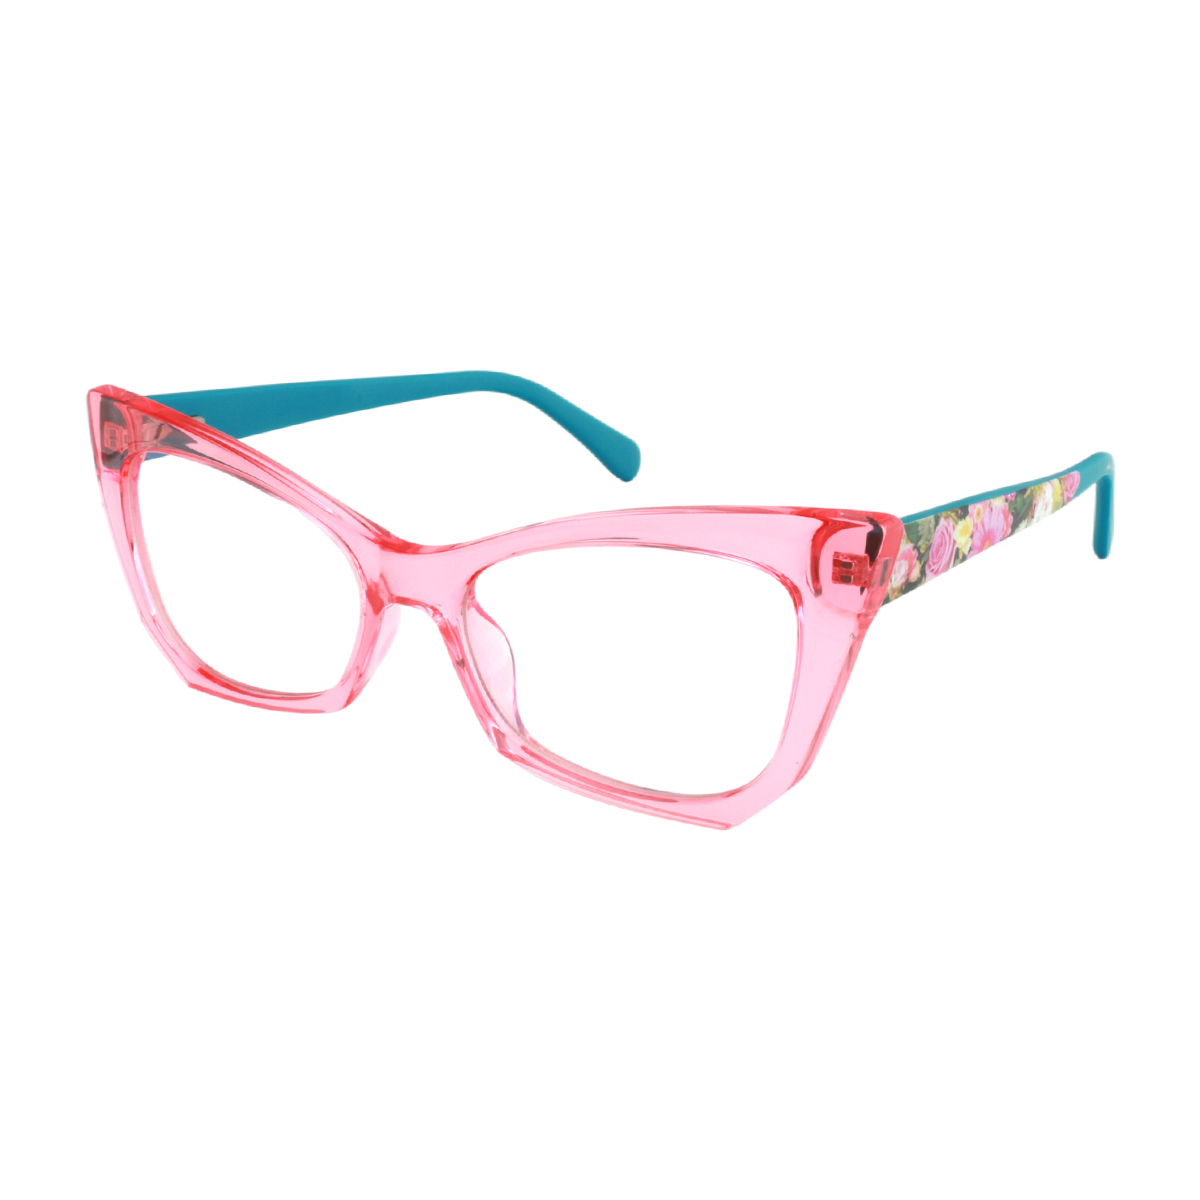 Arce - Cat-eye Pink Reading Glasses for Women